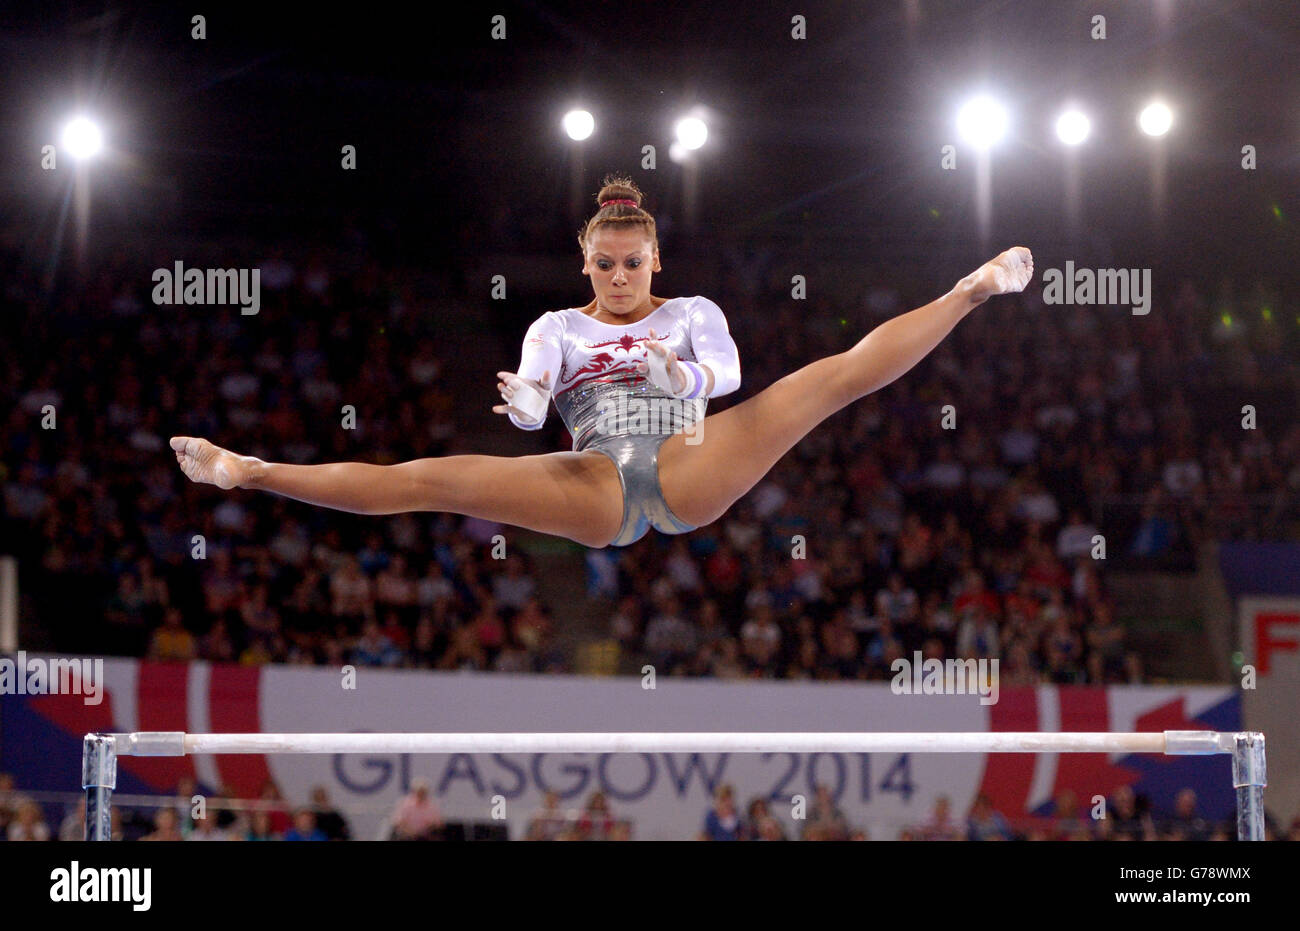 Rebecca Downie, en Angleterre, est en compétition sur les barreaux inégaux lors de la finale de l'équipe féminine de gymnastique artistique et de la qualification individuelle à LA SEE Hydro, lors des Jeux du Commonwealth de 2014 à Glasgow. Banque D'Images